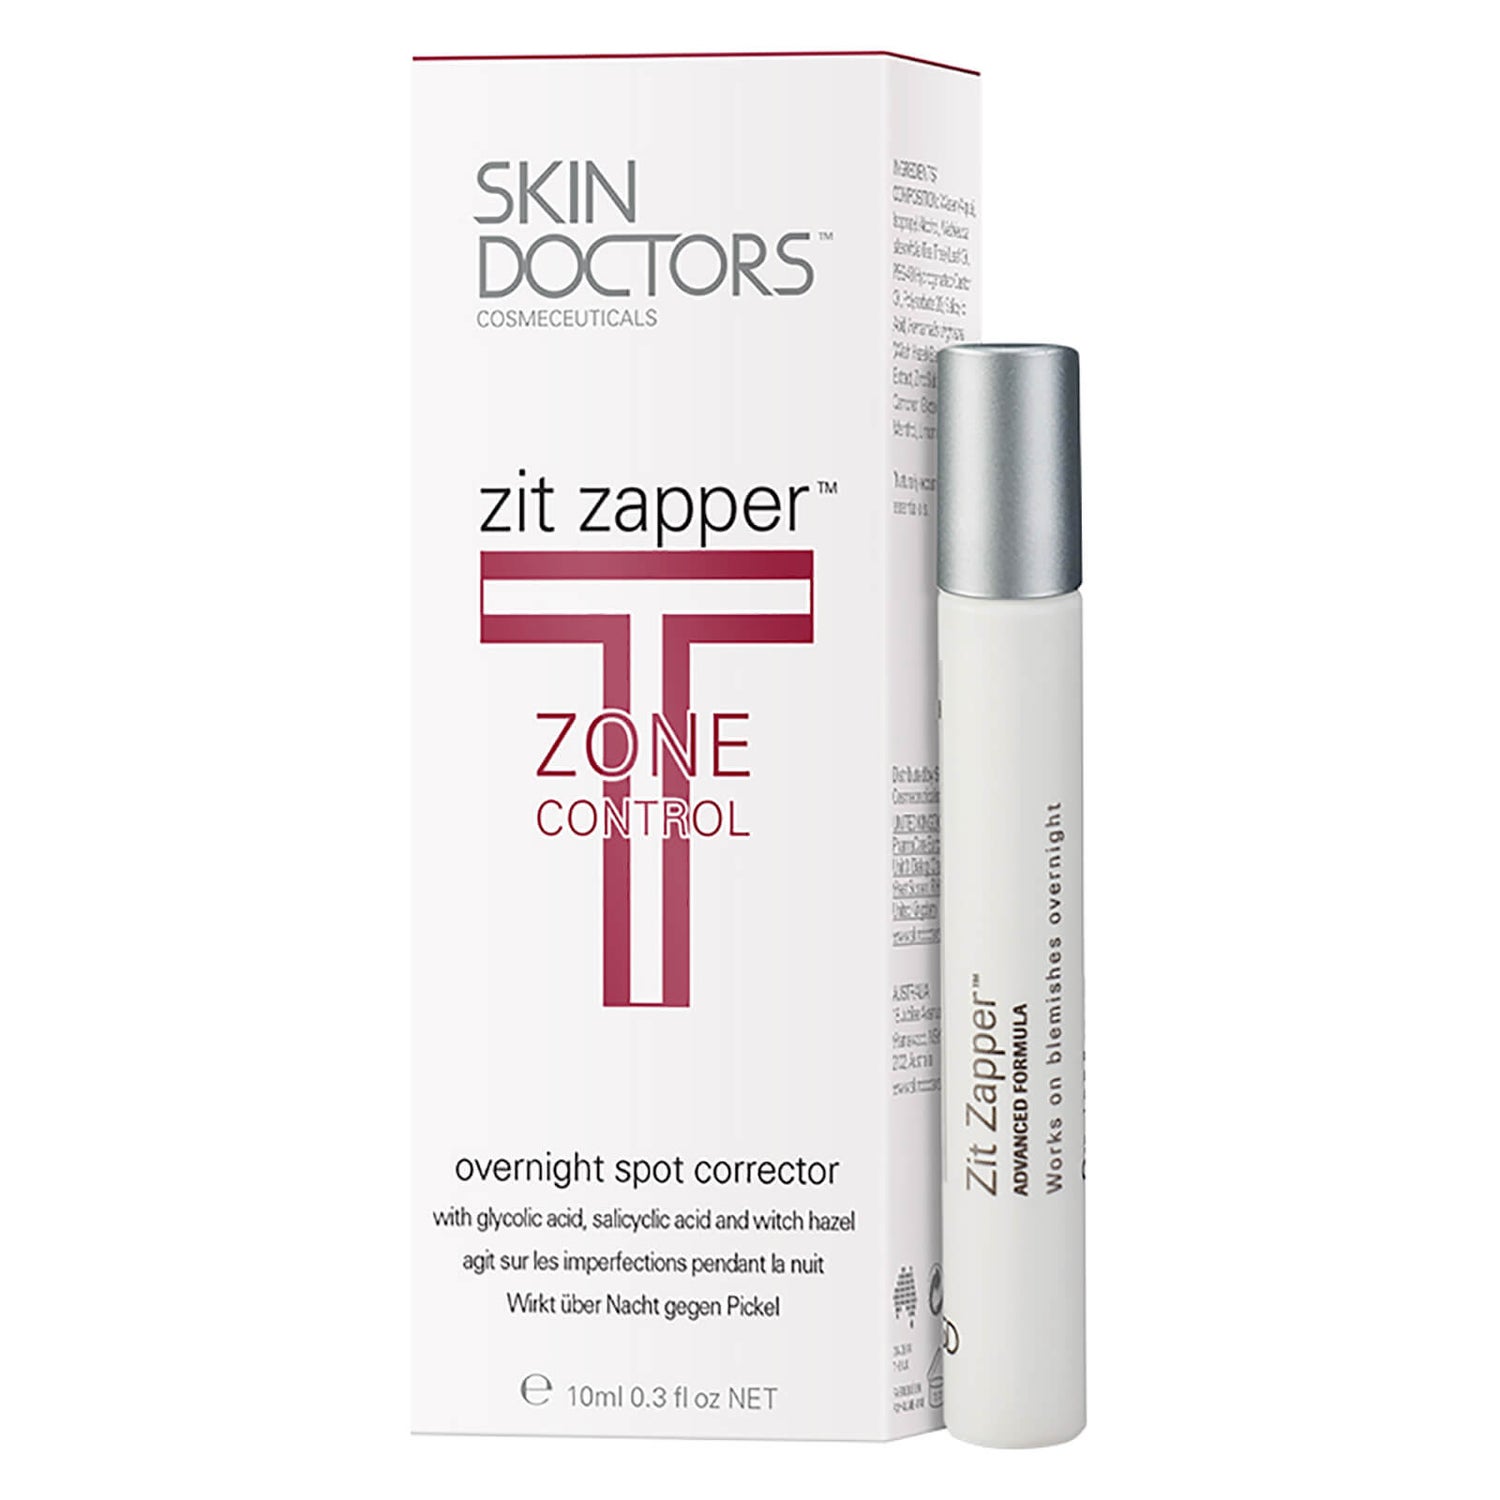 Skin Doctors Zit Zapper (10ml)